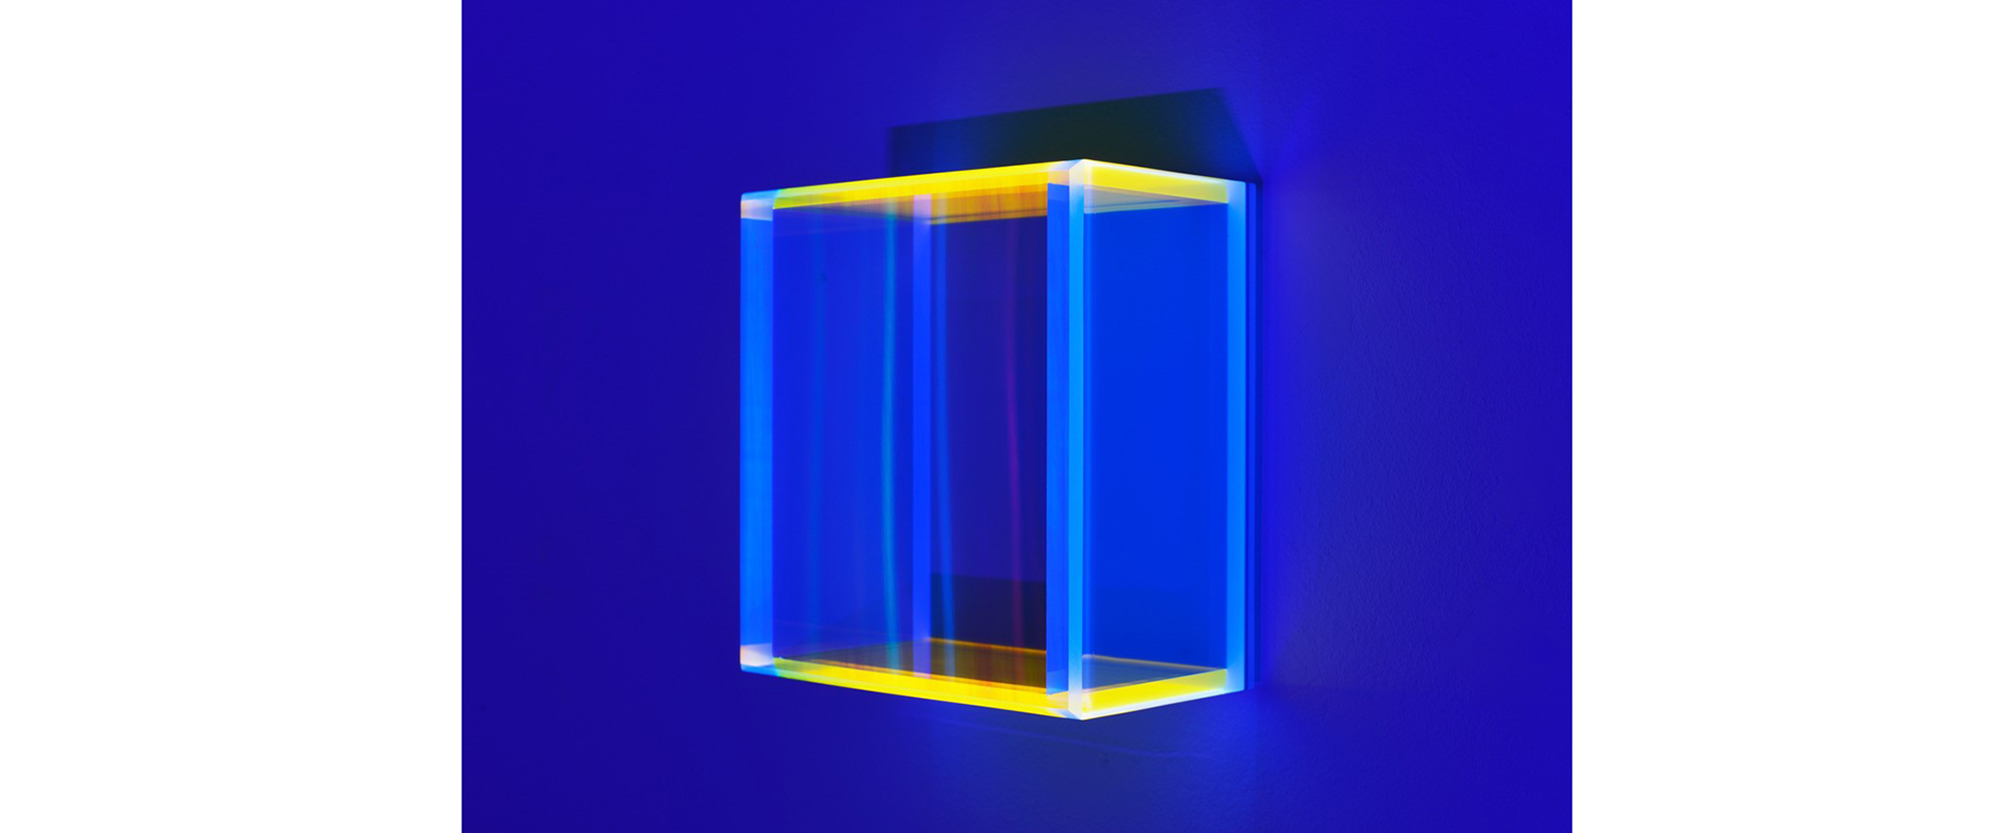 color mirror rainbow pastel blue hongkong - 2020, Acrylglas, fluoreszierend, Edition von 6, 21 x 20 x 11 cm, Schwazlichtansicht